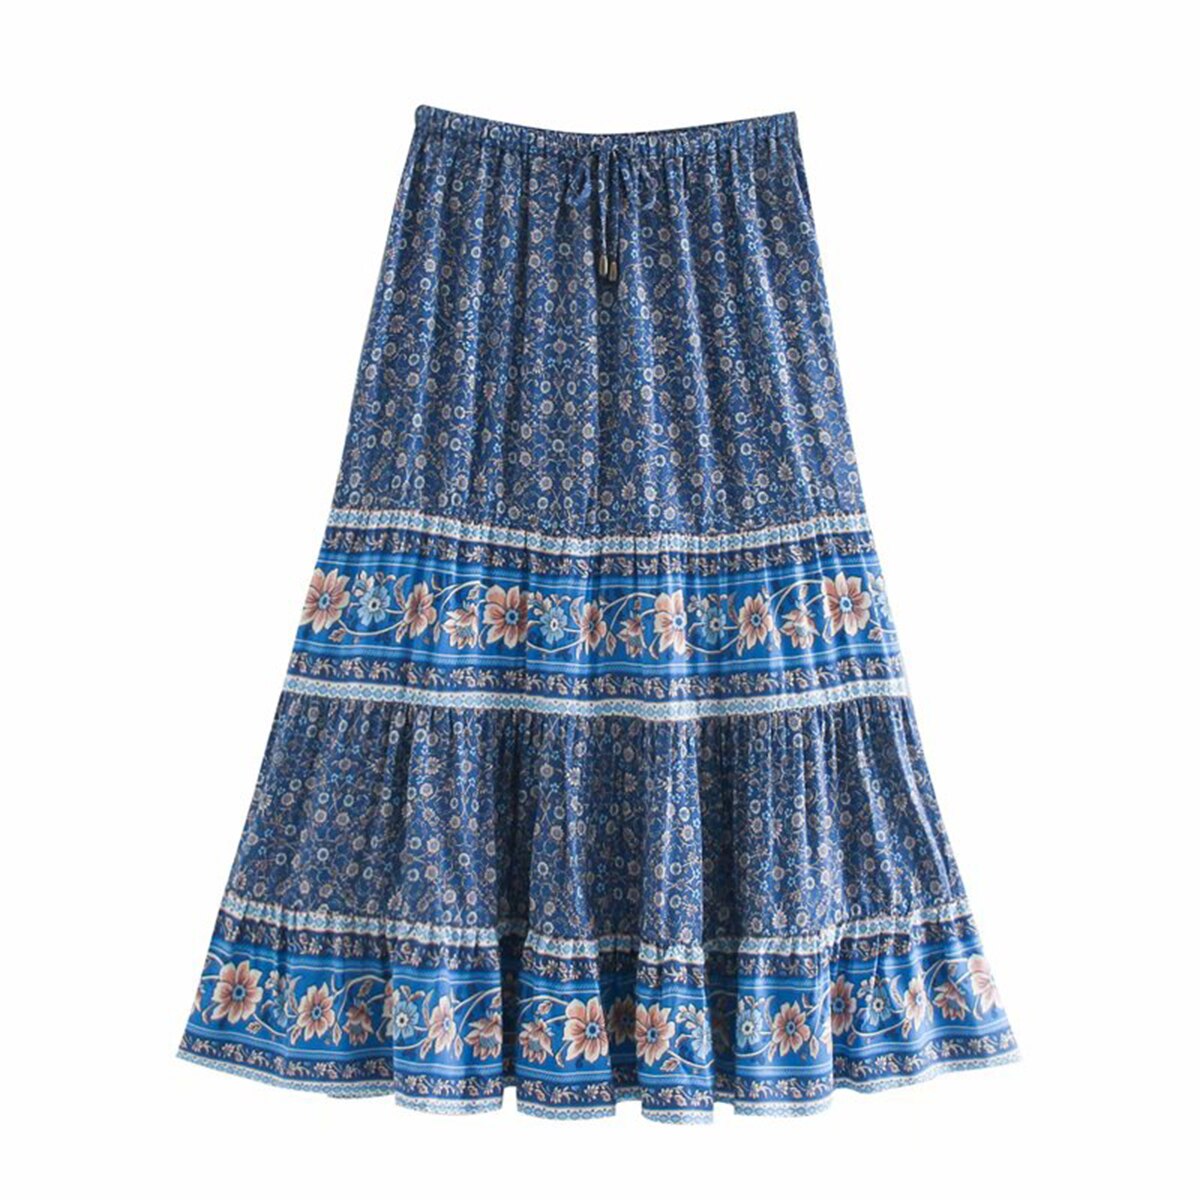 Monaco Maxi Skirt Collection